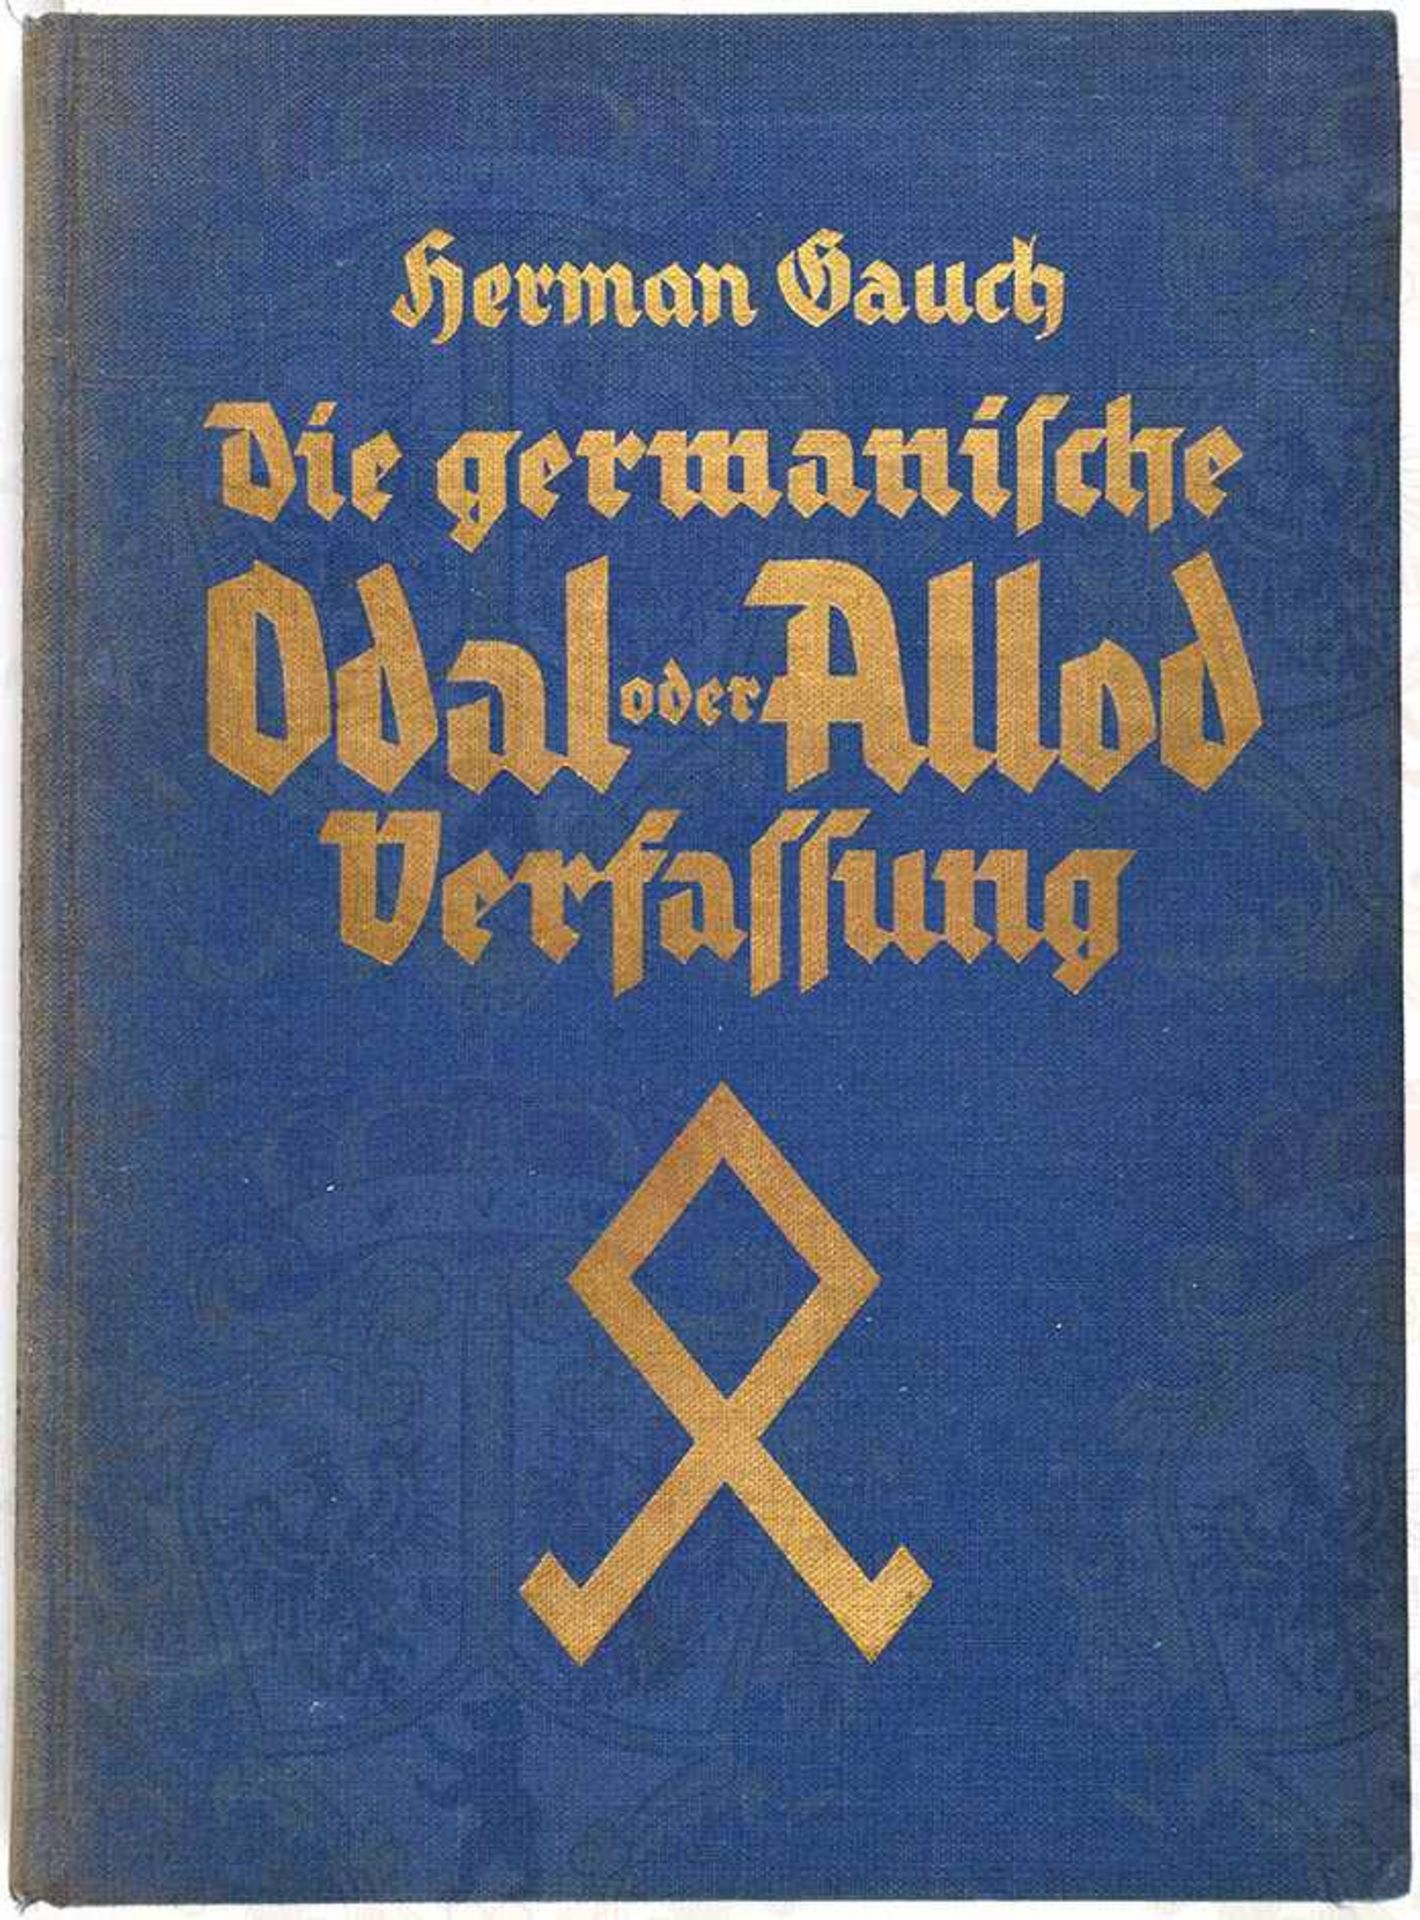 DIE GERMANISCHE ODAL ODER ALLOD-VERFASSUNG, Dr. H. Gauch, Blut u. Boden-V. 1934, 86 S., gld.gepr.